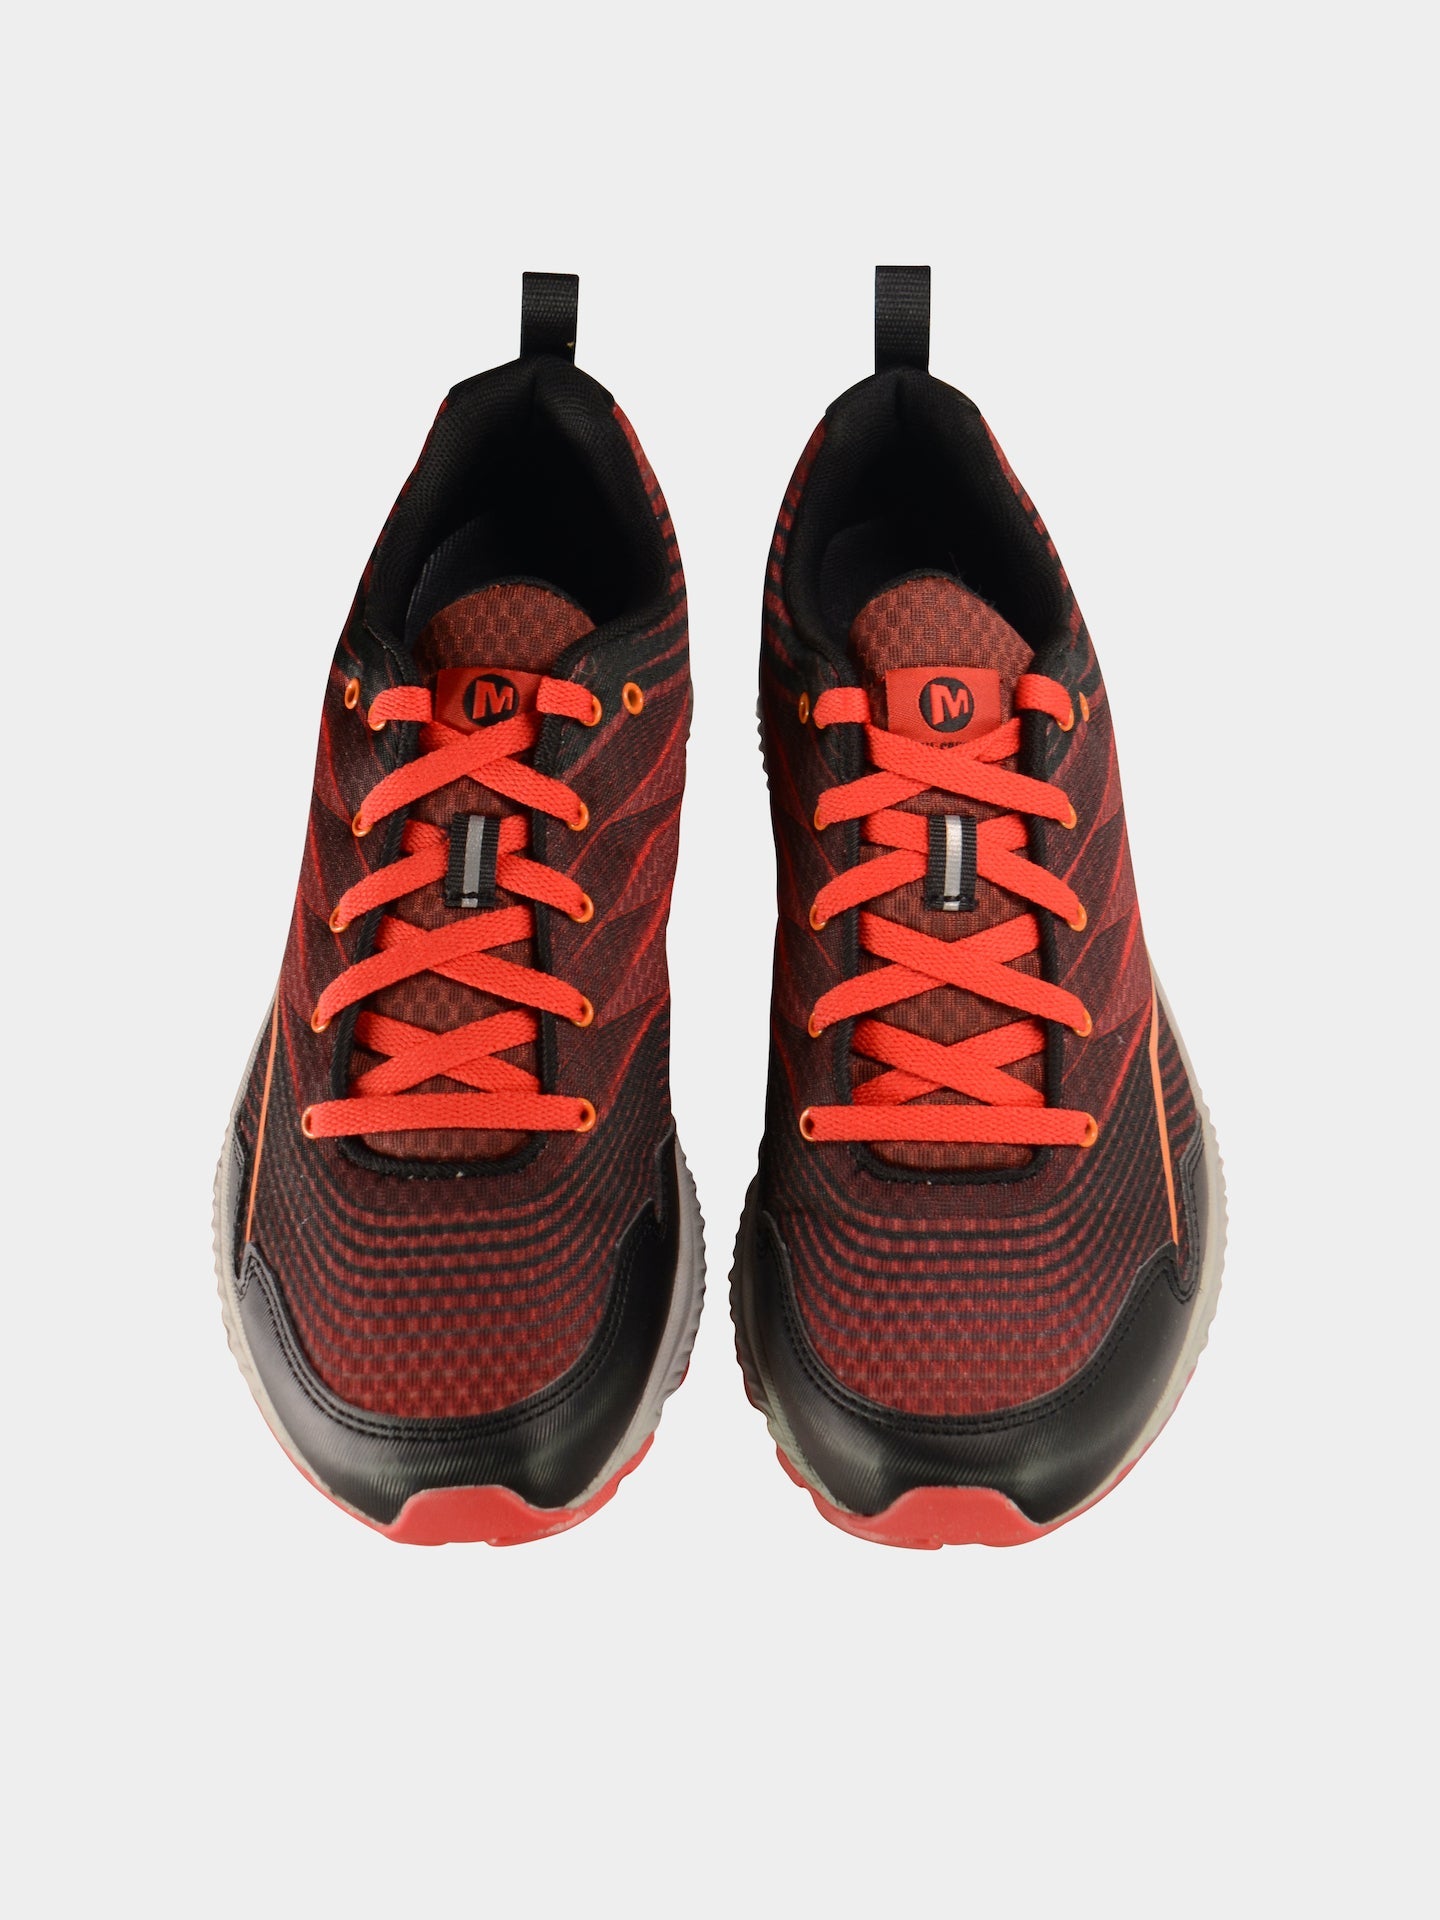 Merrell Men's Trail Crusher Running Shoe #color_Red